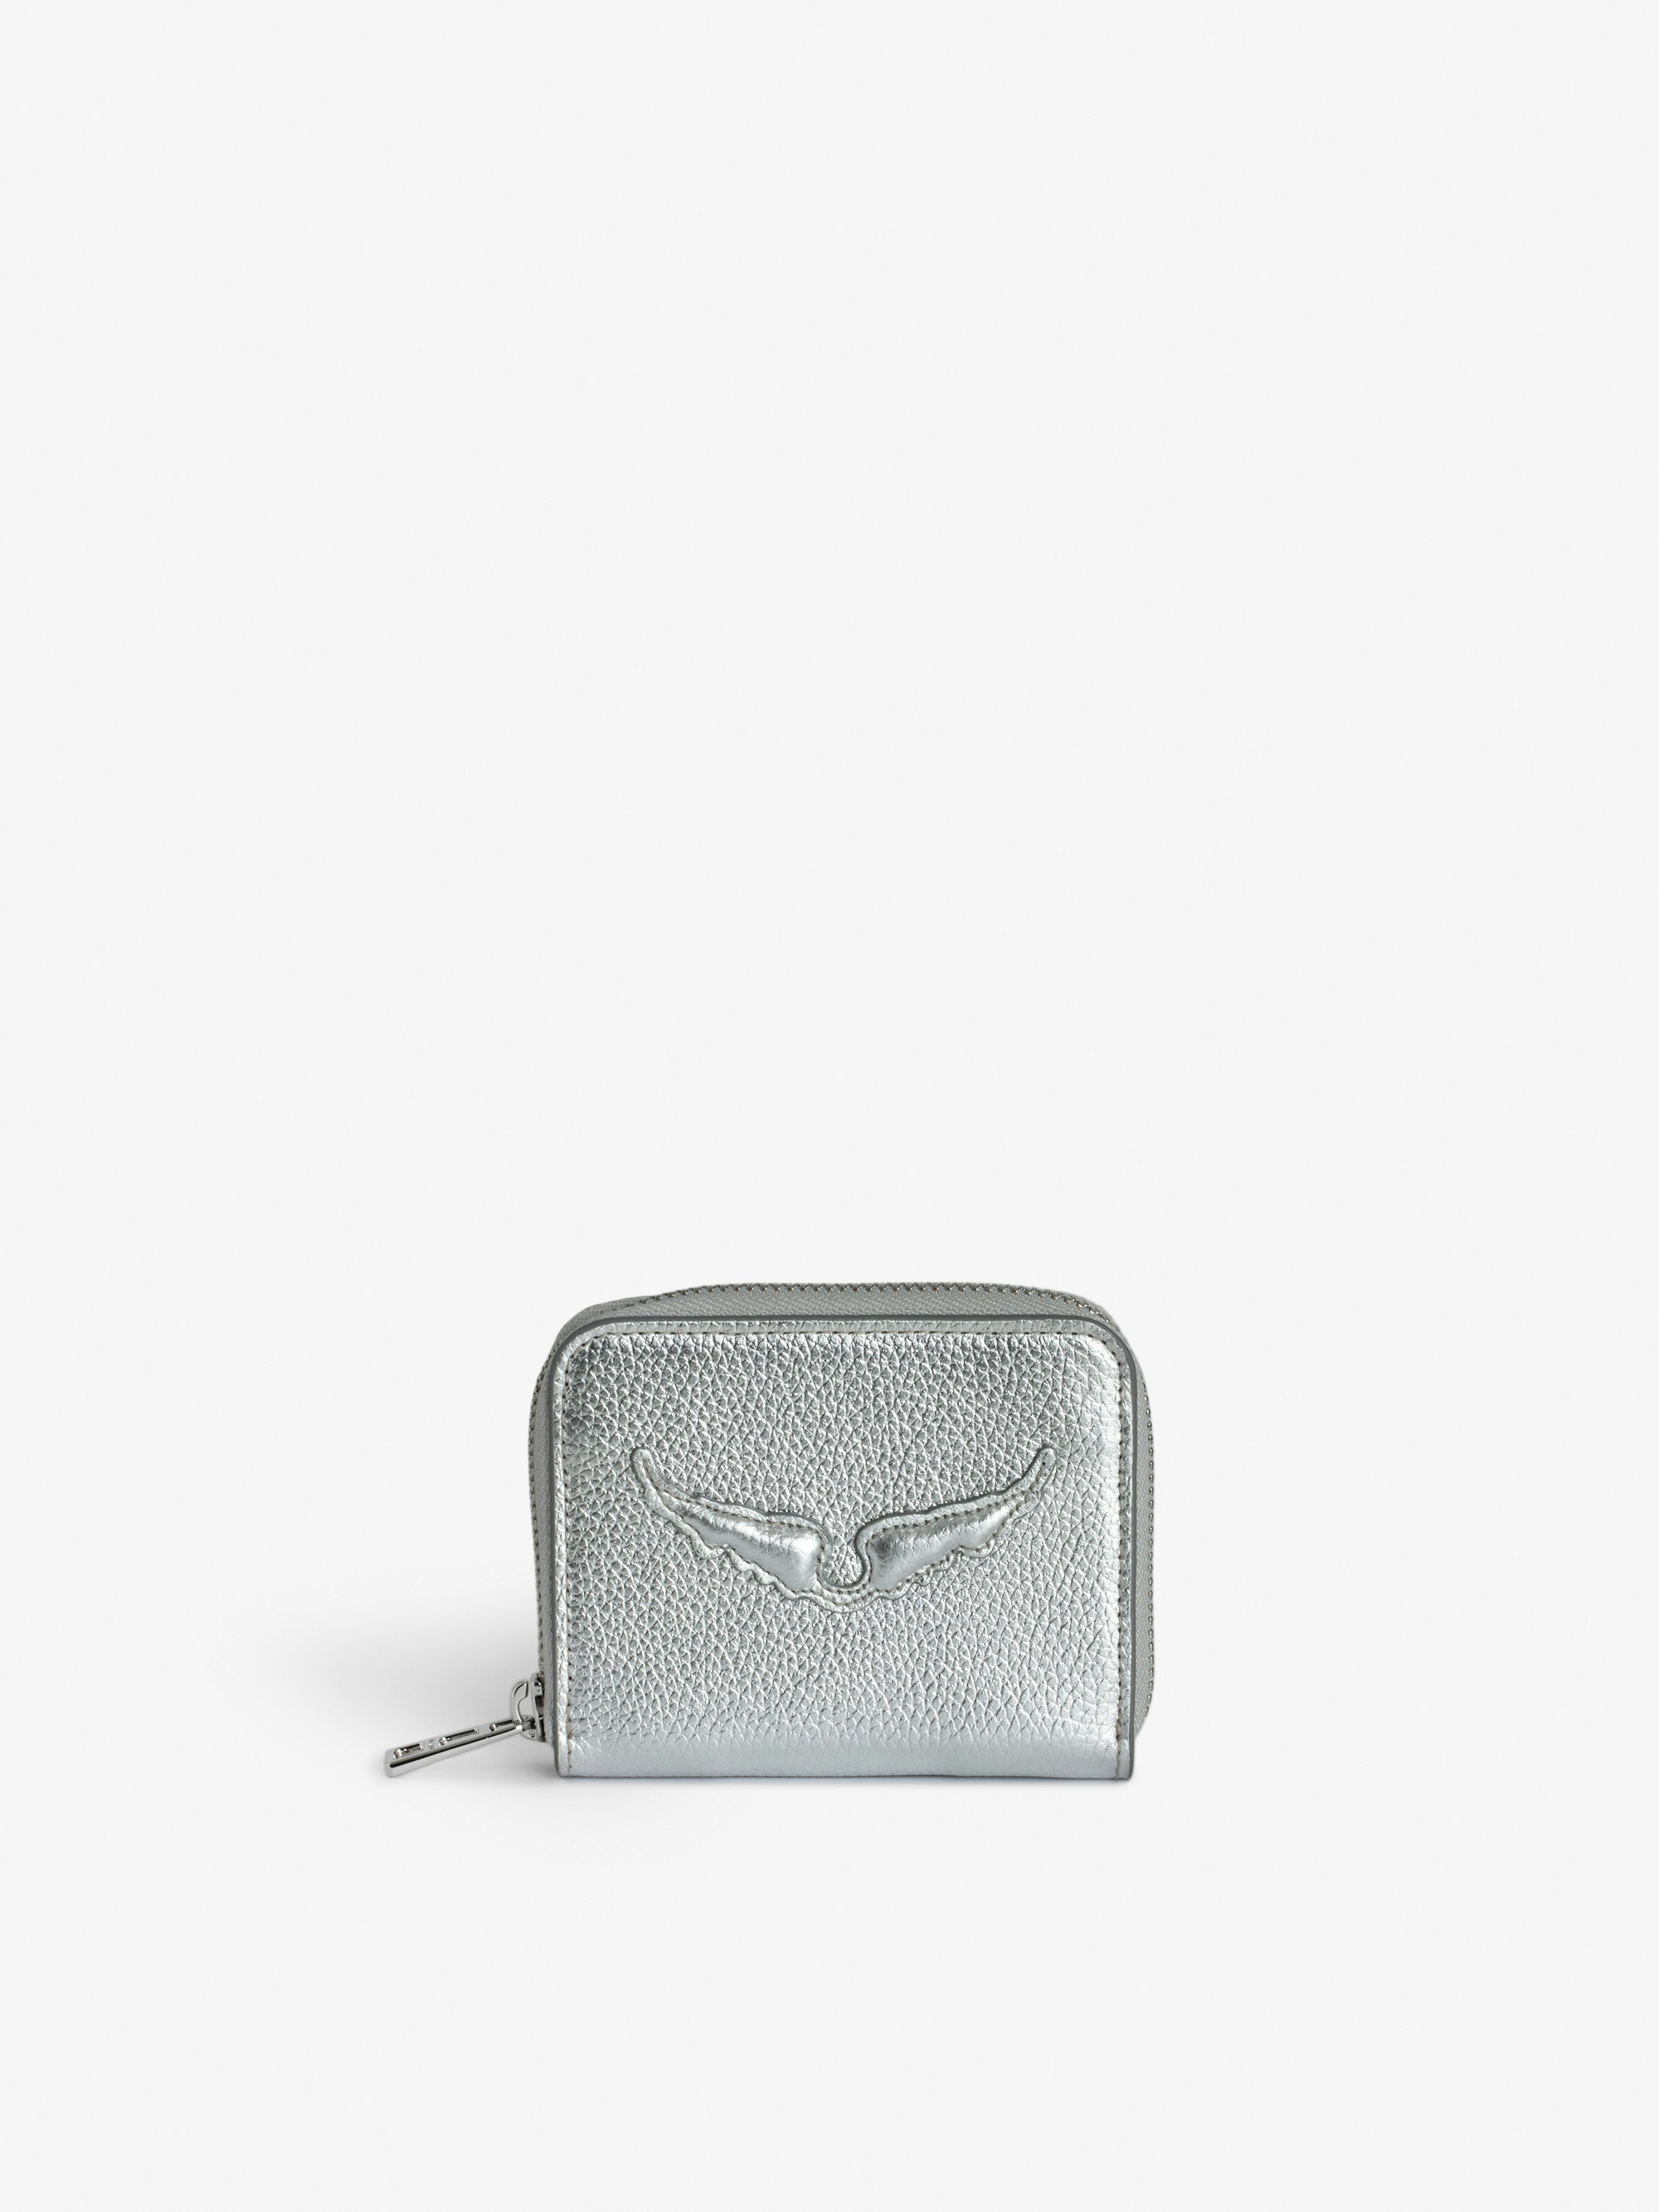 Geldbörse Mini ZV - Portemonnaie aus silberfarbenem, genarbtem Metallic-Leder mit geprägten Signature-Flügeln.